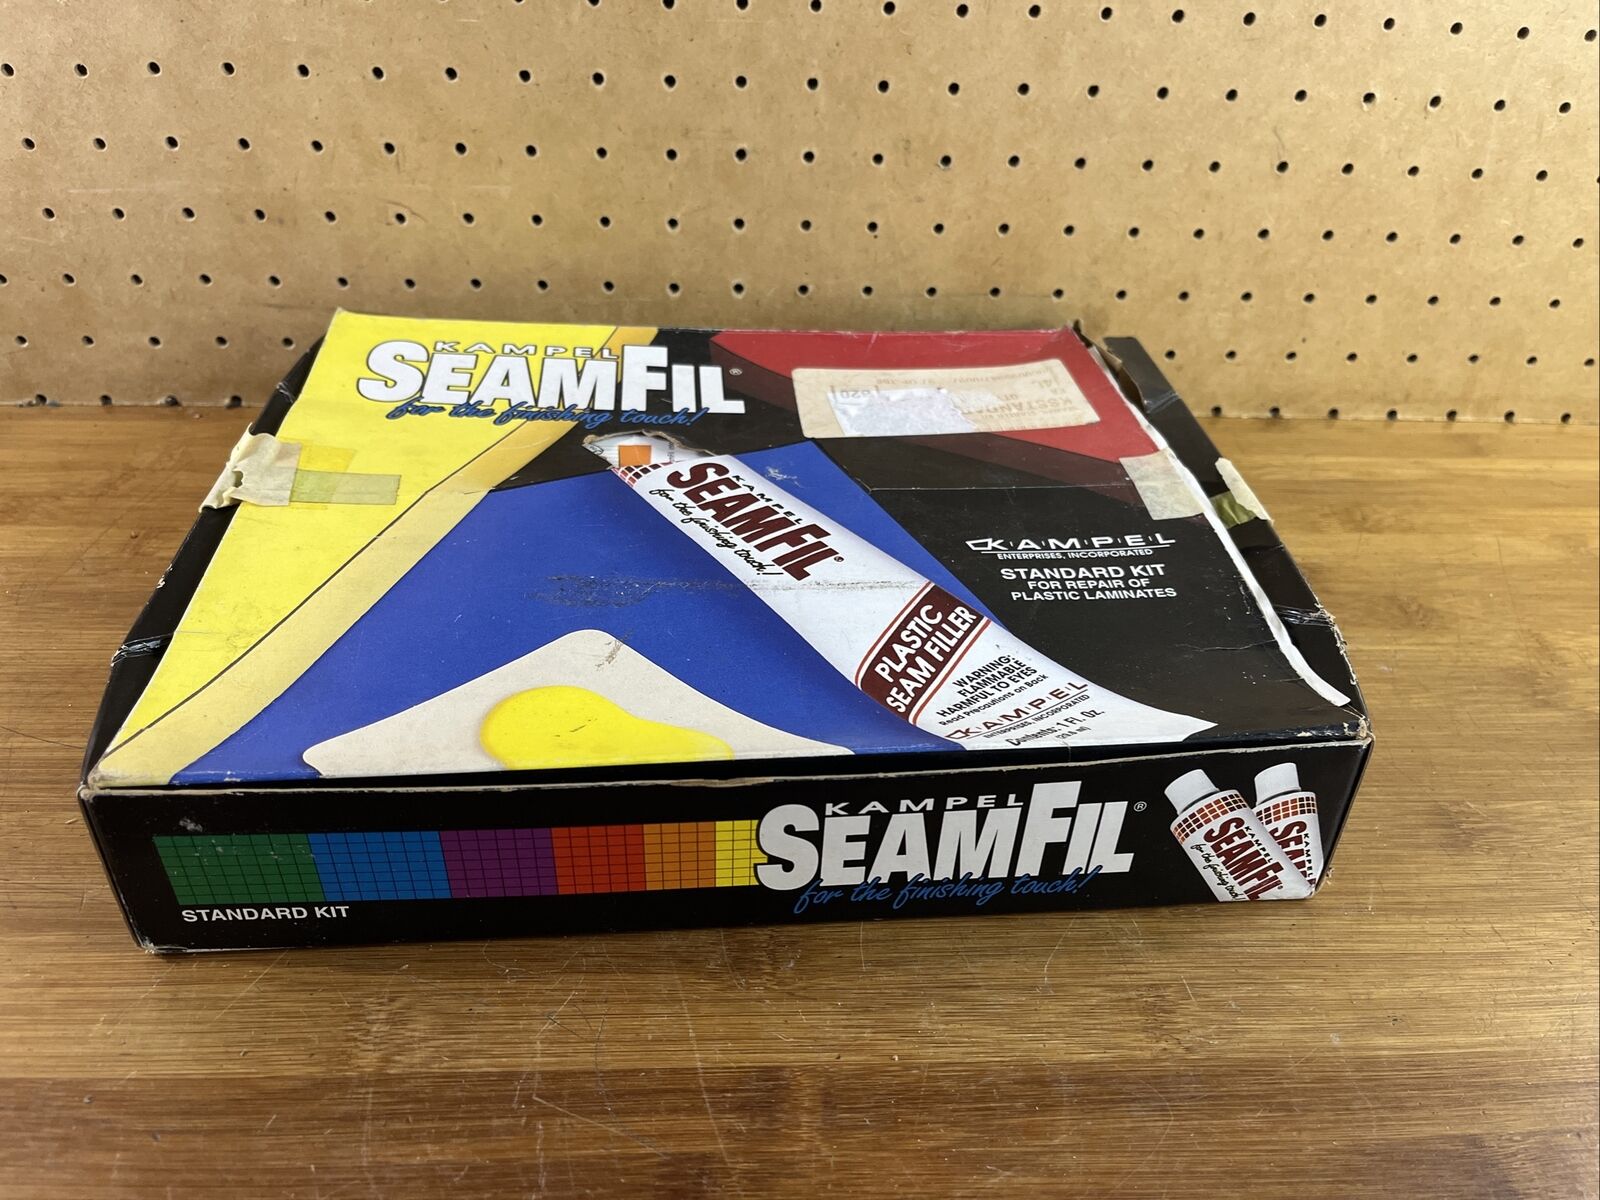 Kampel Seamfil Standard Color Kit For Countertop Laminate Repair Missing Solvent